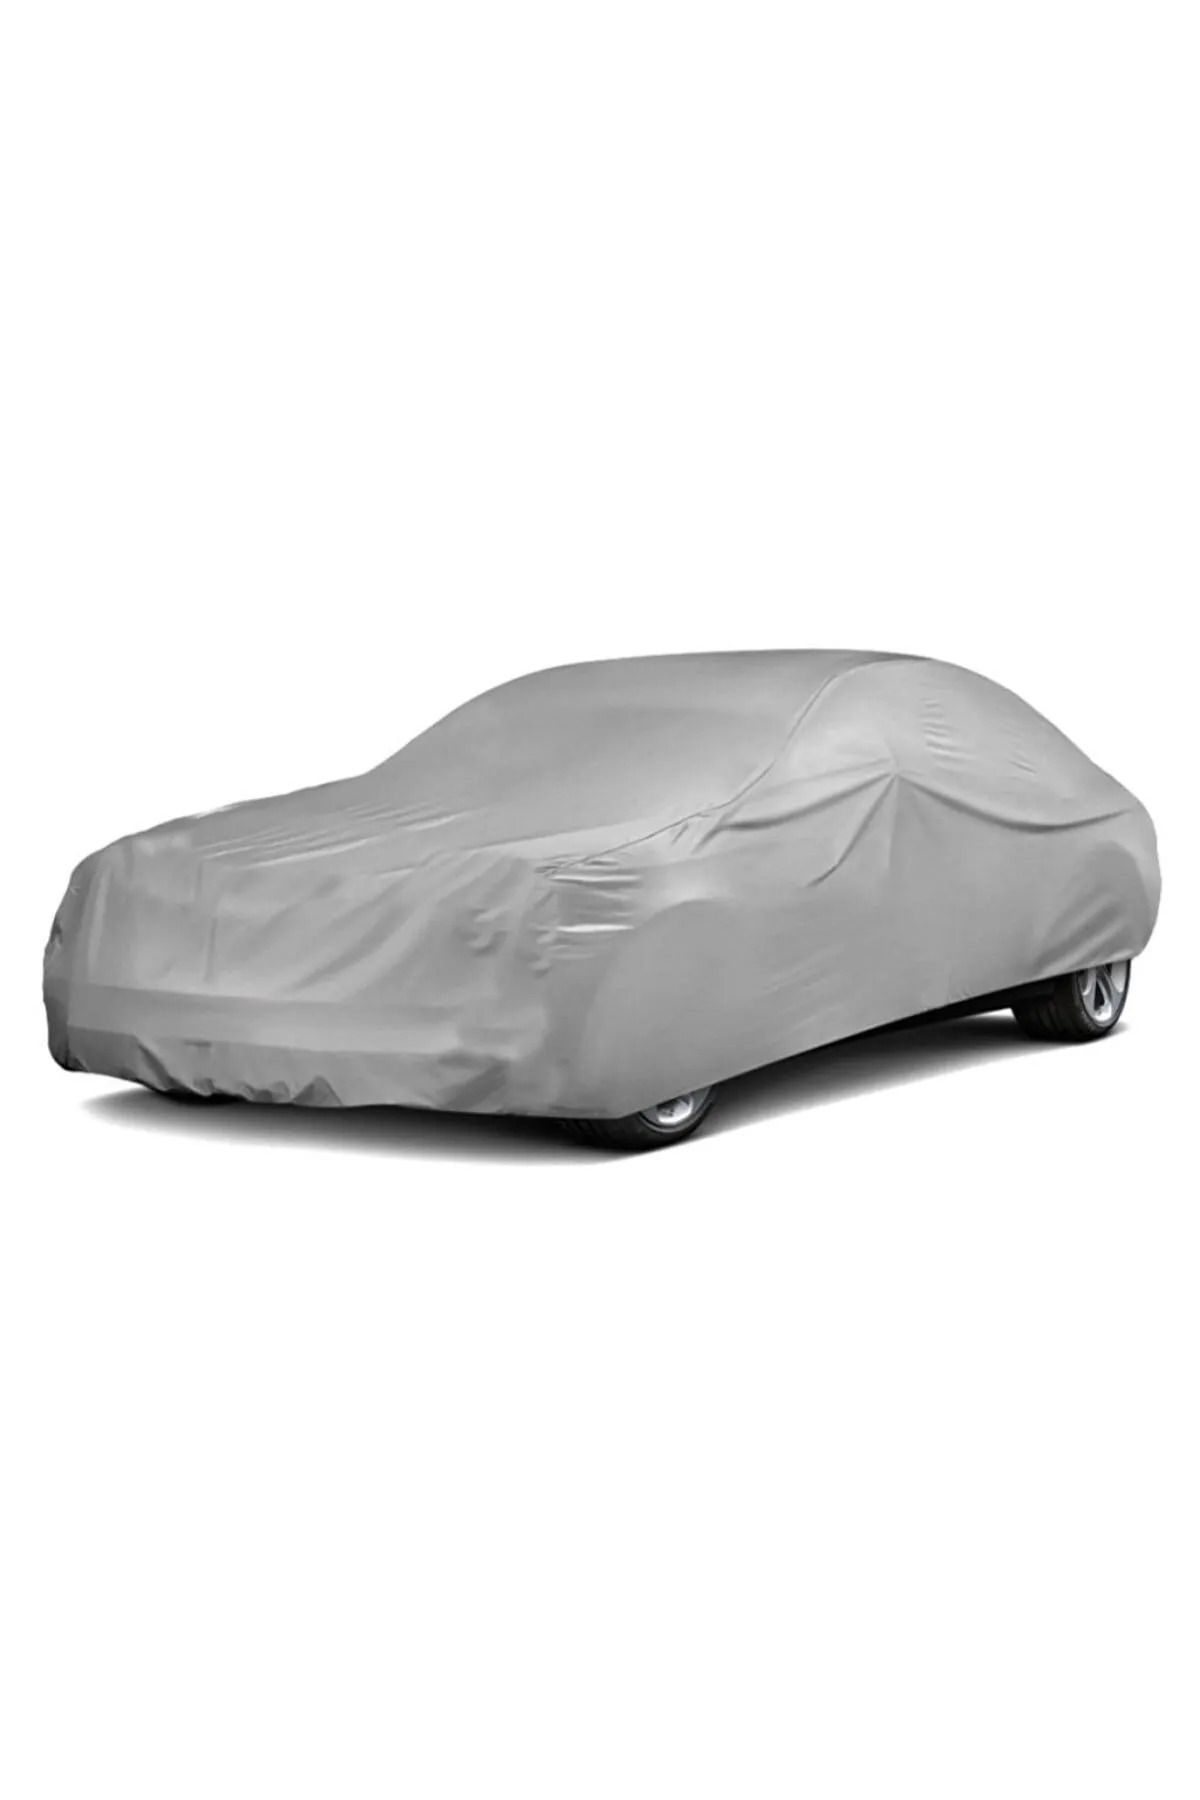 PlusOto Volkswagen Eos Compatible Car Tarpaulin, Vehicle Cover, Tent -  Trendyol